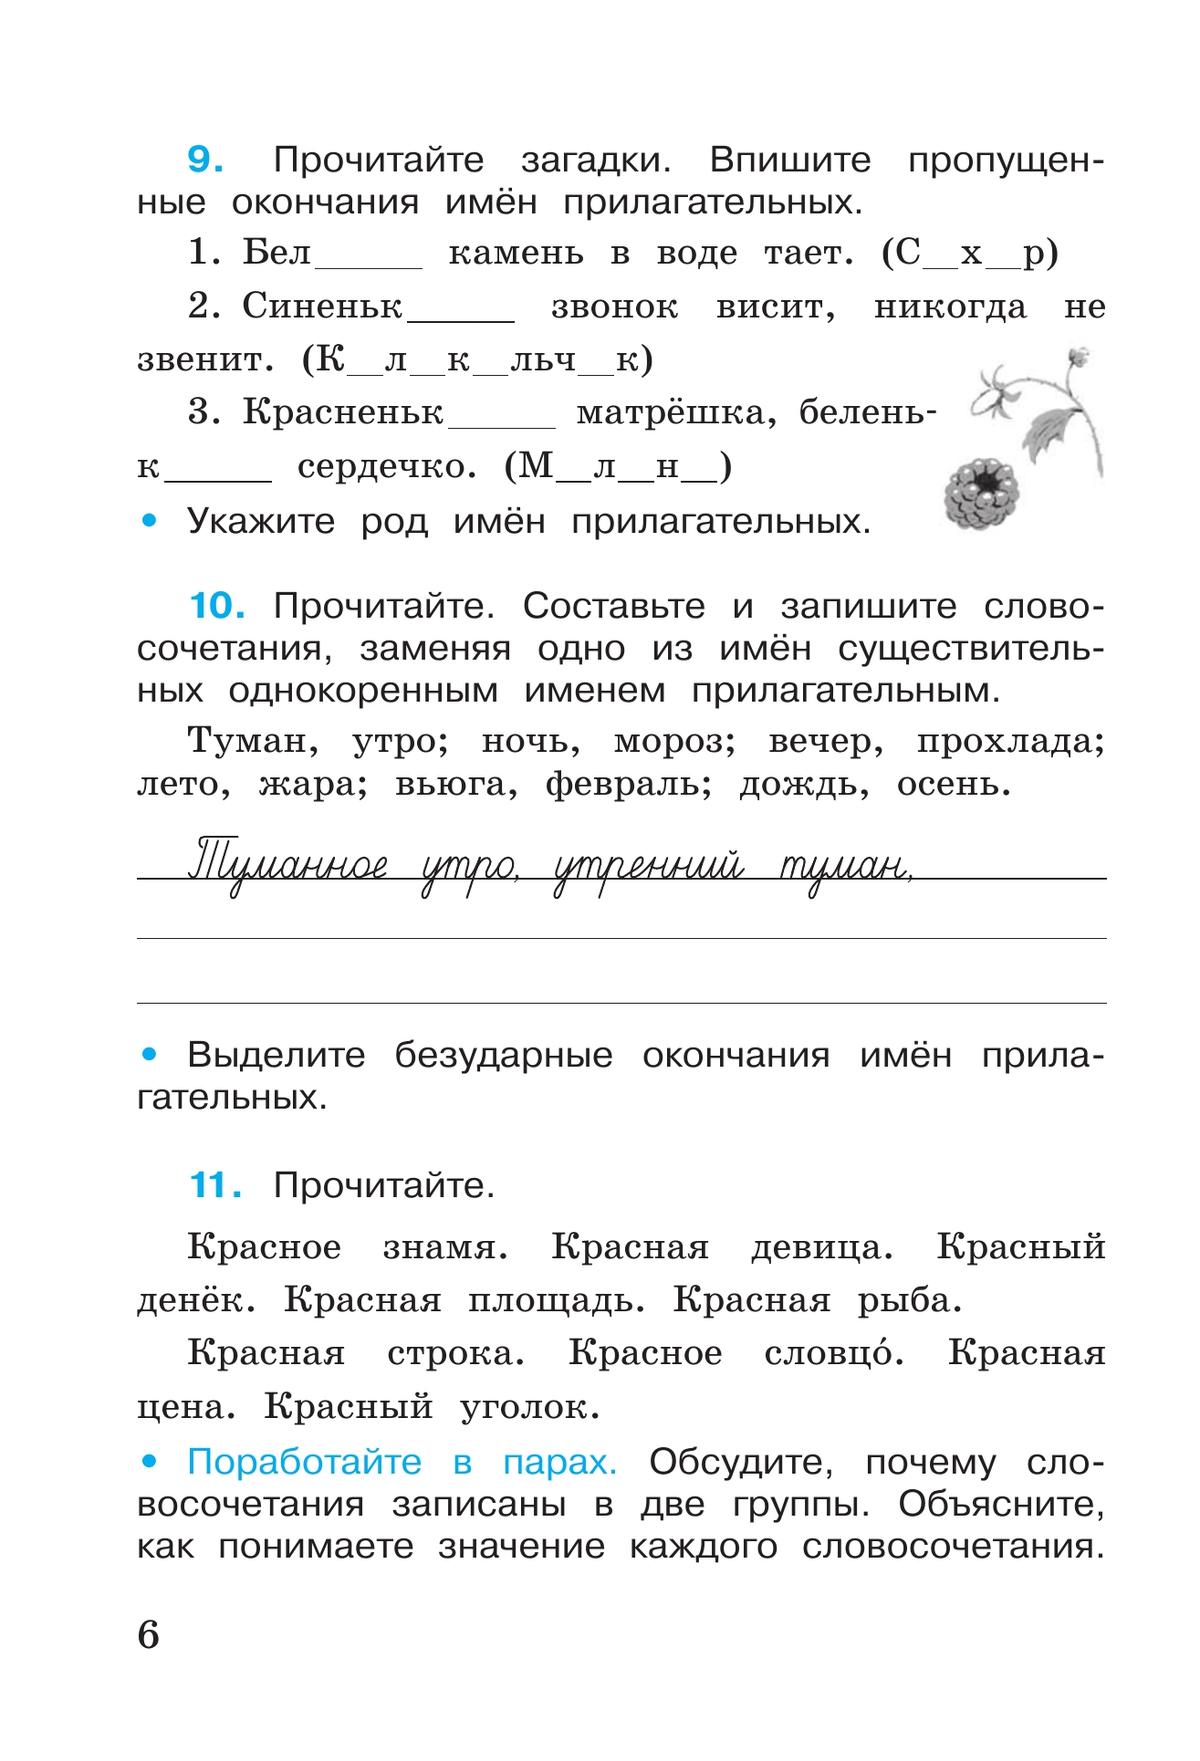 Русский язык. Рабочая тетрадь. 4 класс. В 2-х ч. Ч. 2 10